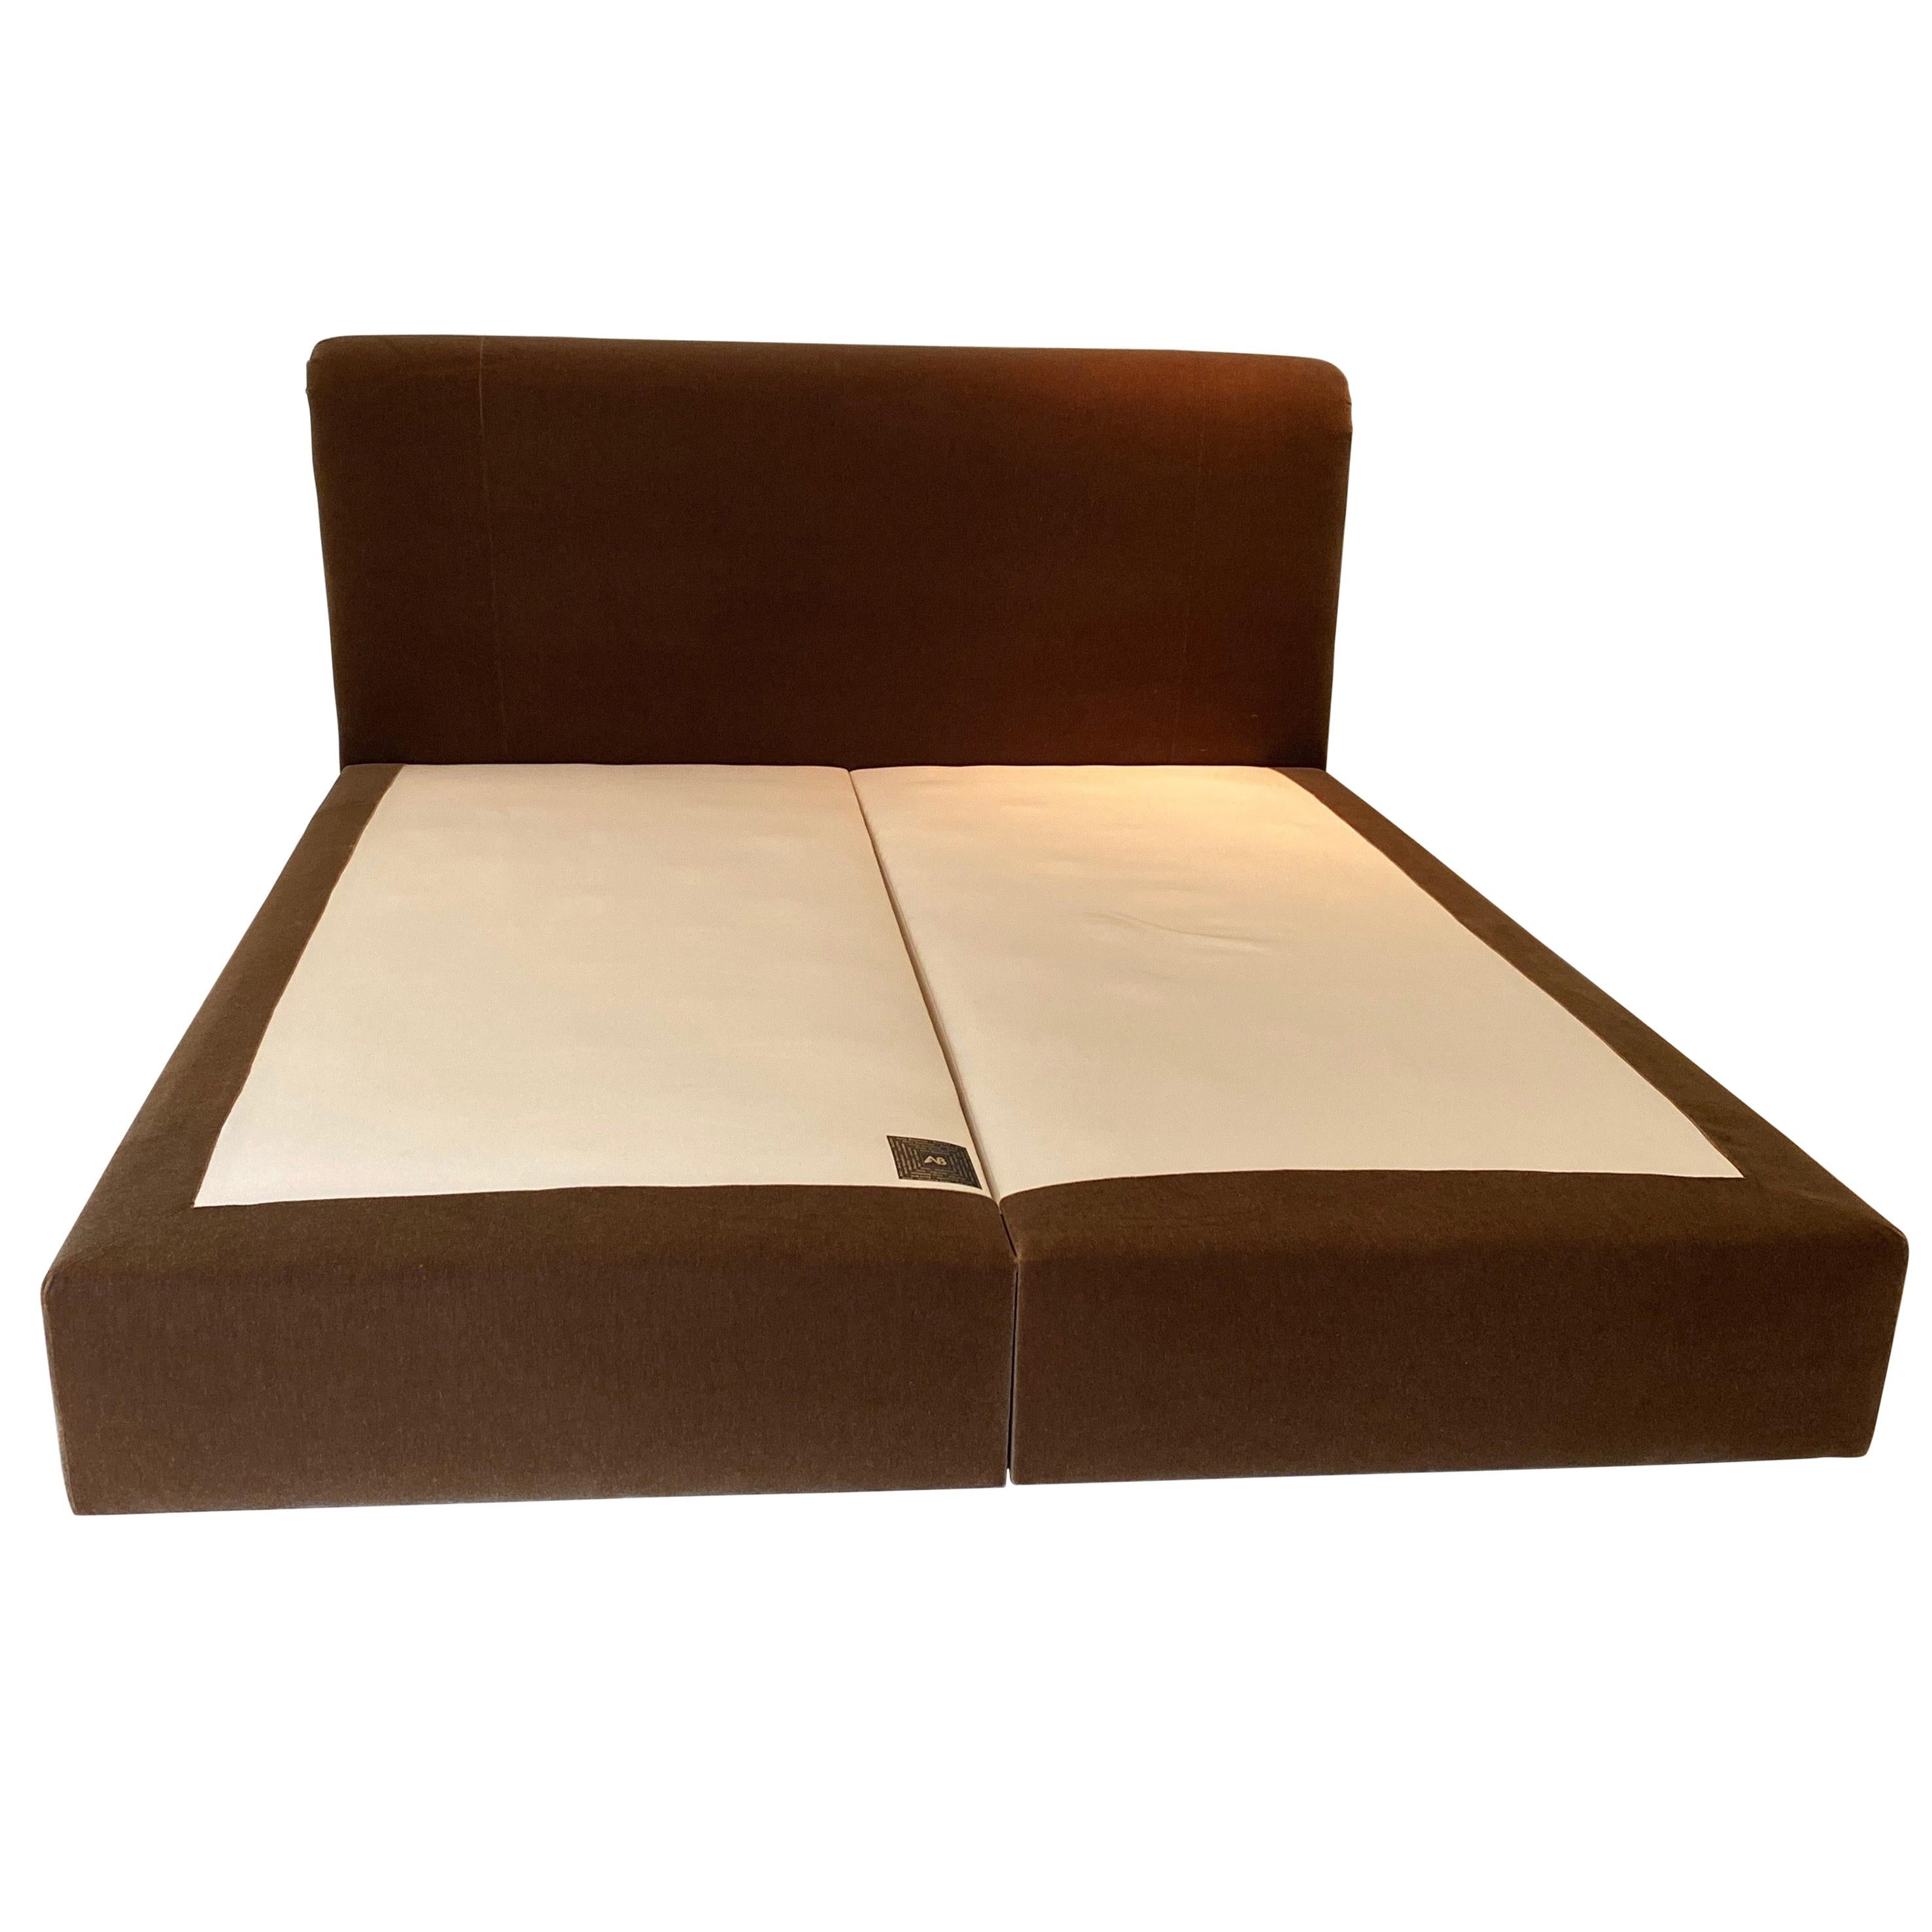 Custom Made King Size Avery Boardman Mohair Upholstered Bed Frame